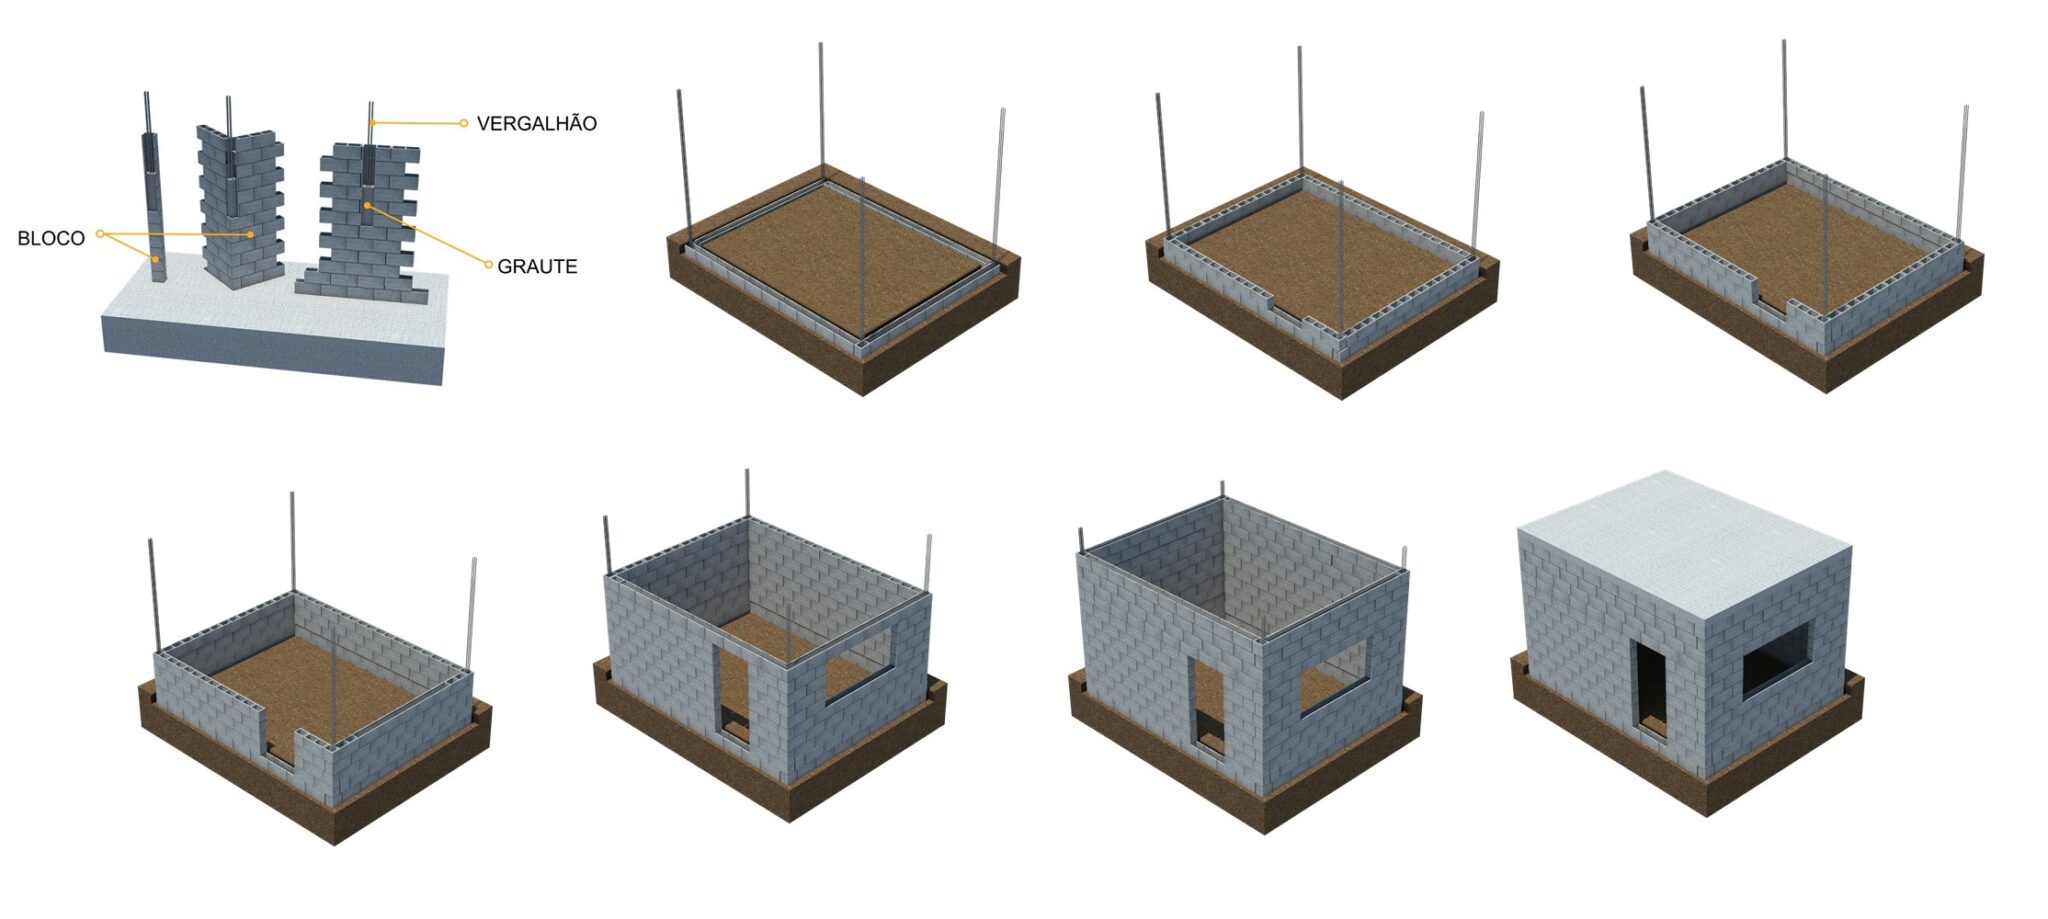 Melhorobra apresenta as etapa de construção em tijolo estrutural